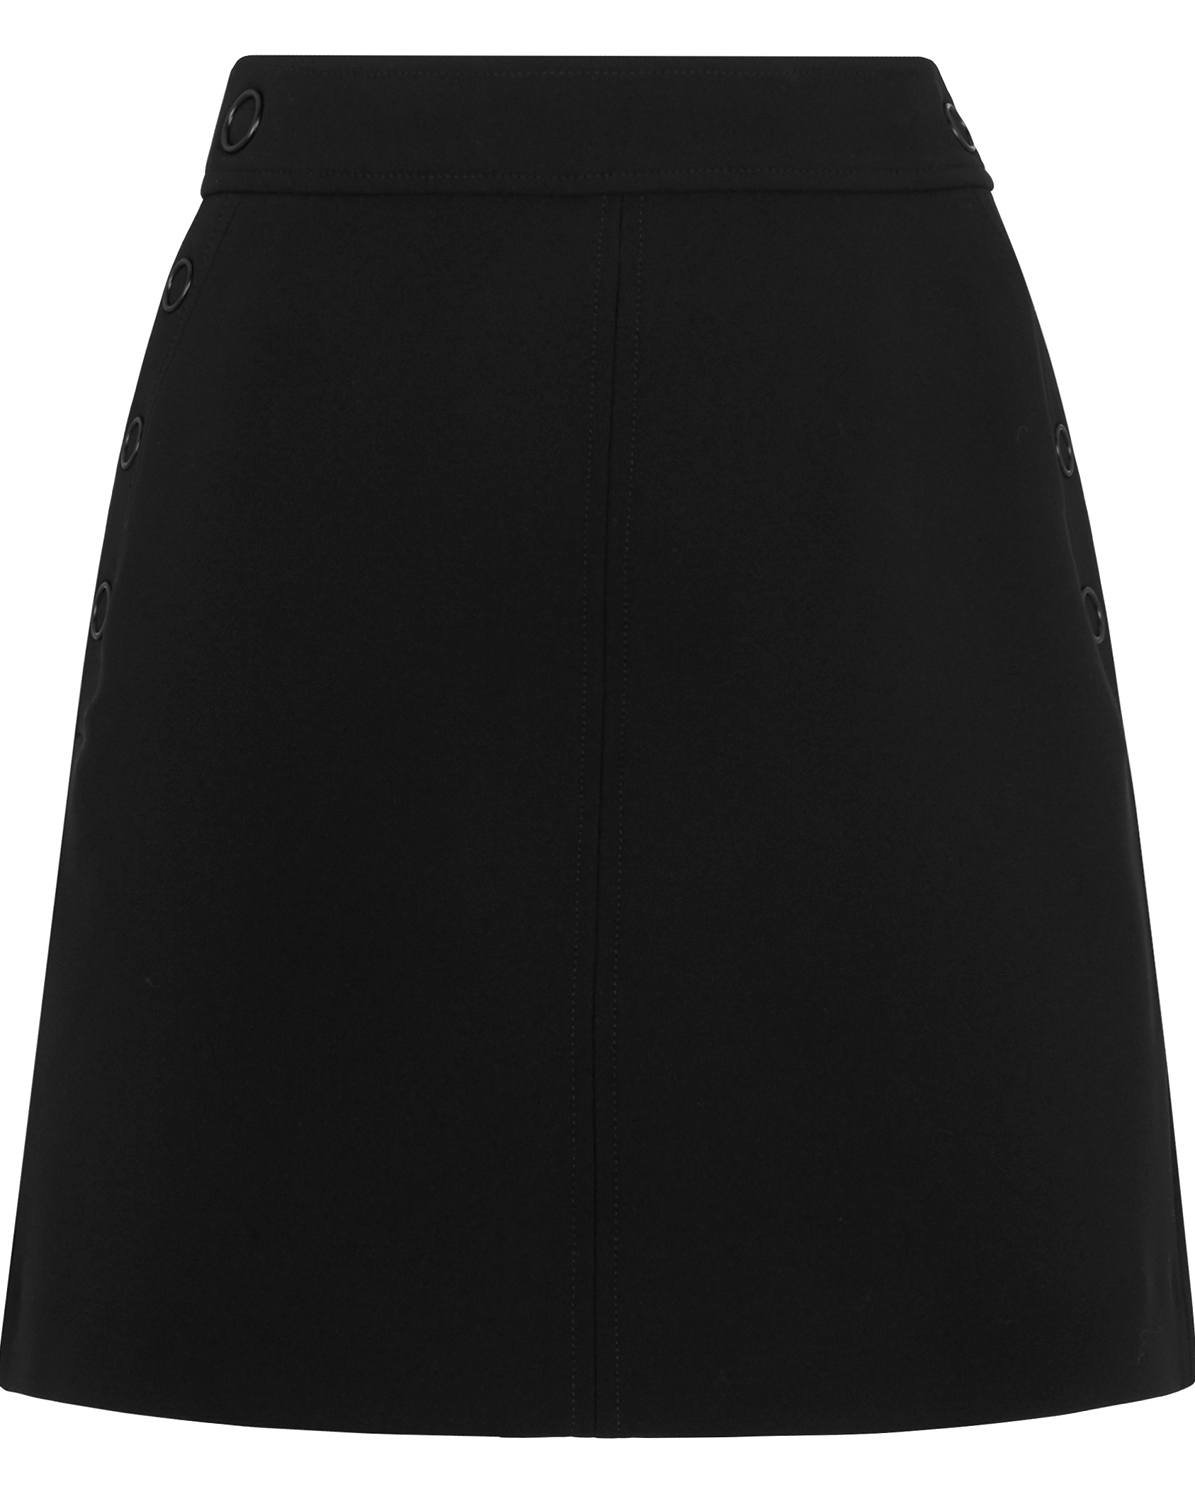 WHISTLES Denise Popper Aline Skirt in Black | Endource